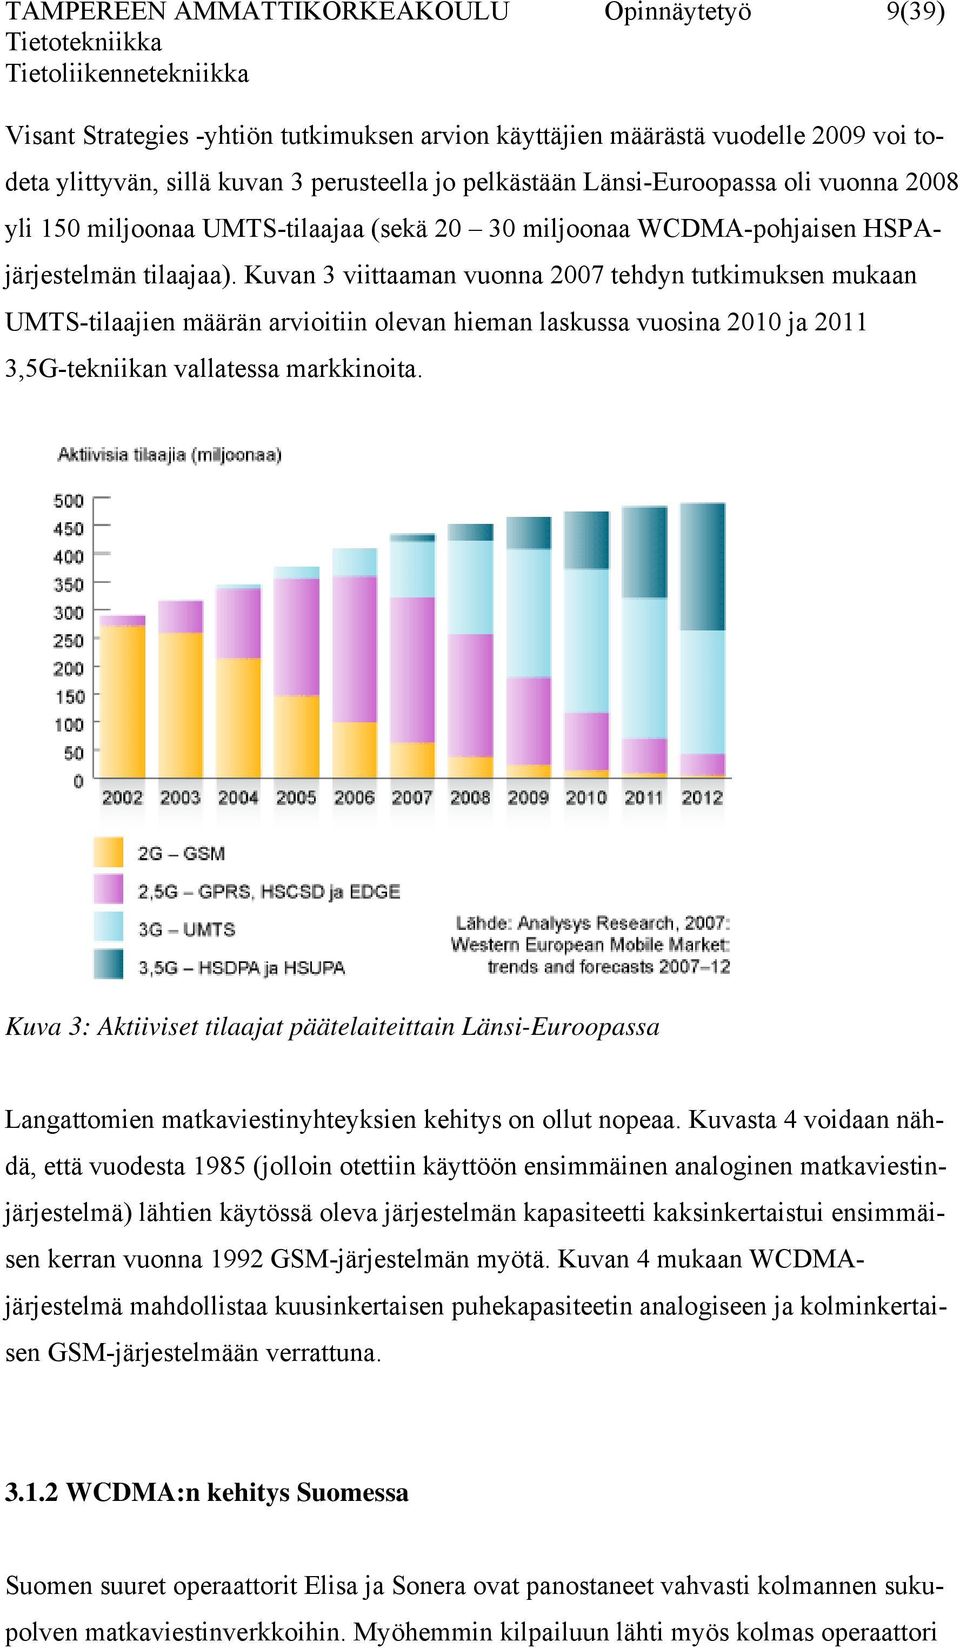 Kuvan 3 viittaaman vuonna 2007 tehdyn tutkimuksen mukaan UMTS-tilaajien määrän arvioitiin olevan hieman laskussa vuosina 2010 ja 2011 3,5G-tekniikan vallatessa markkinoita.